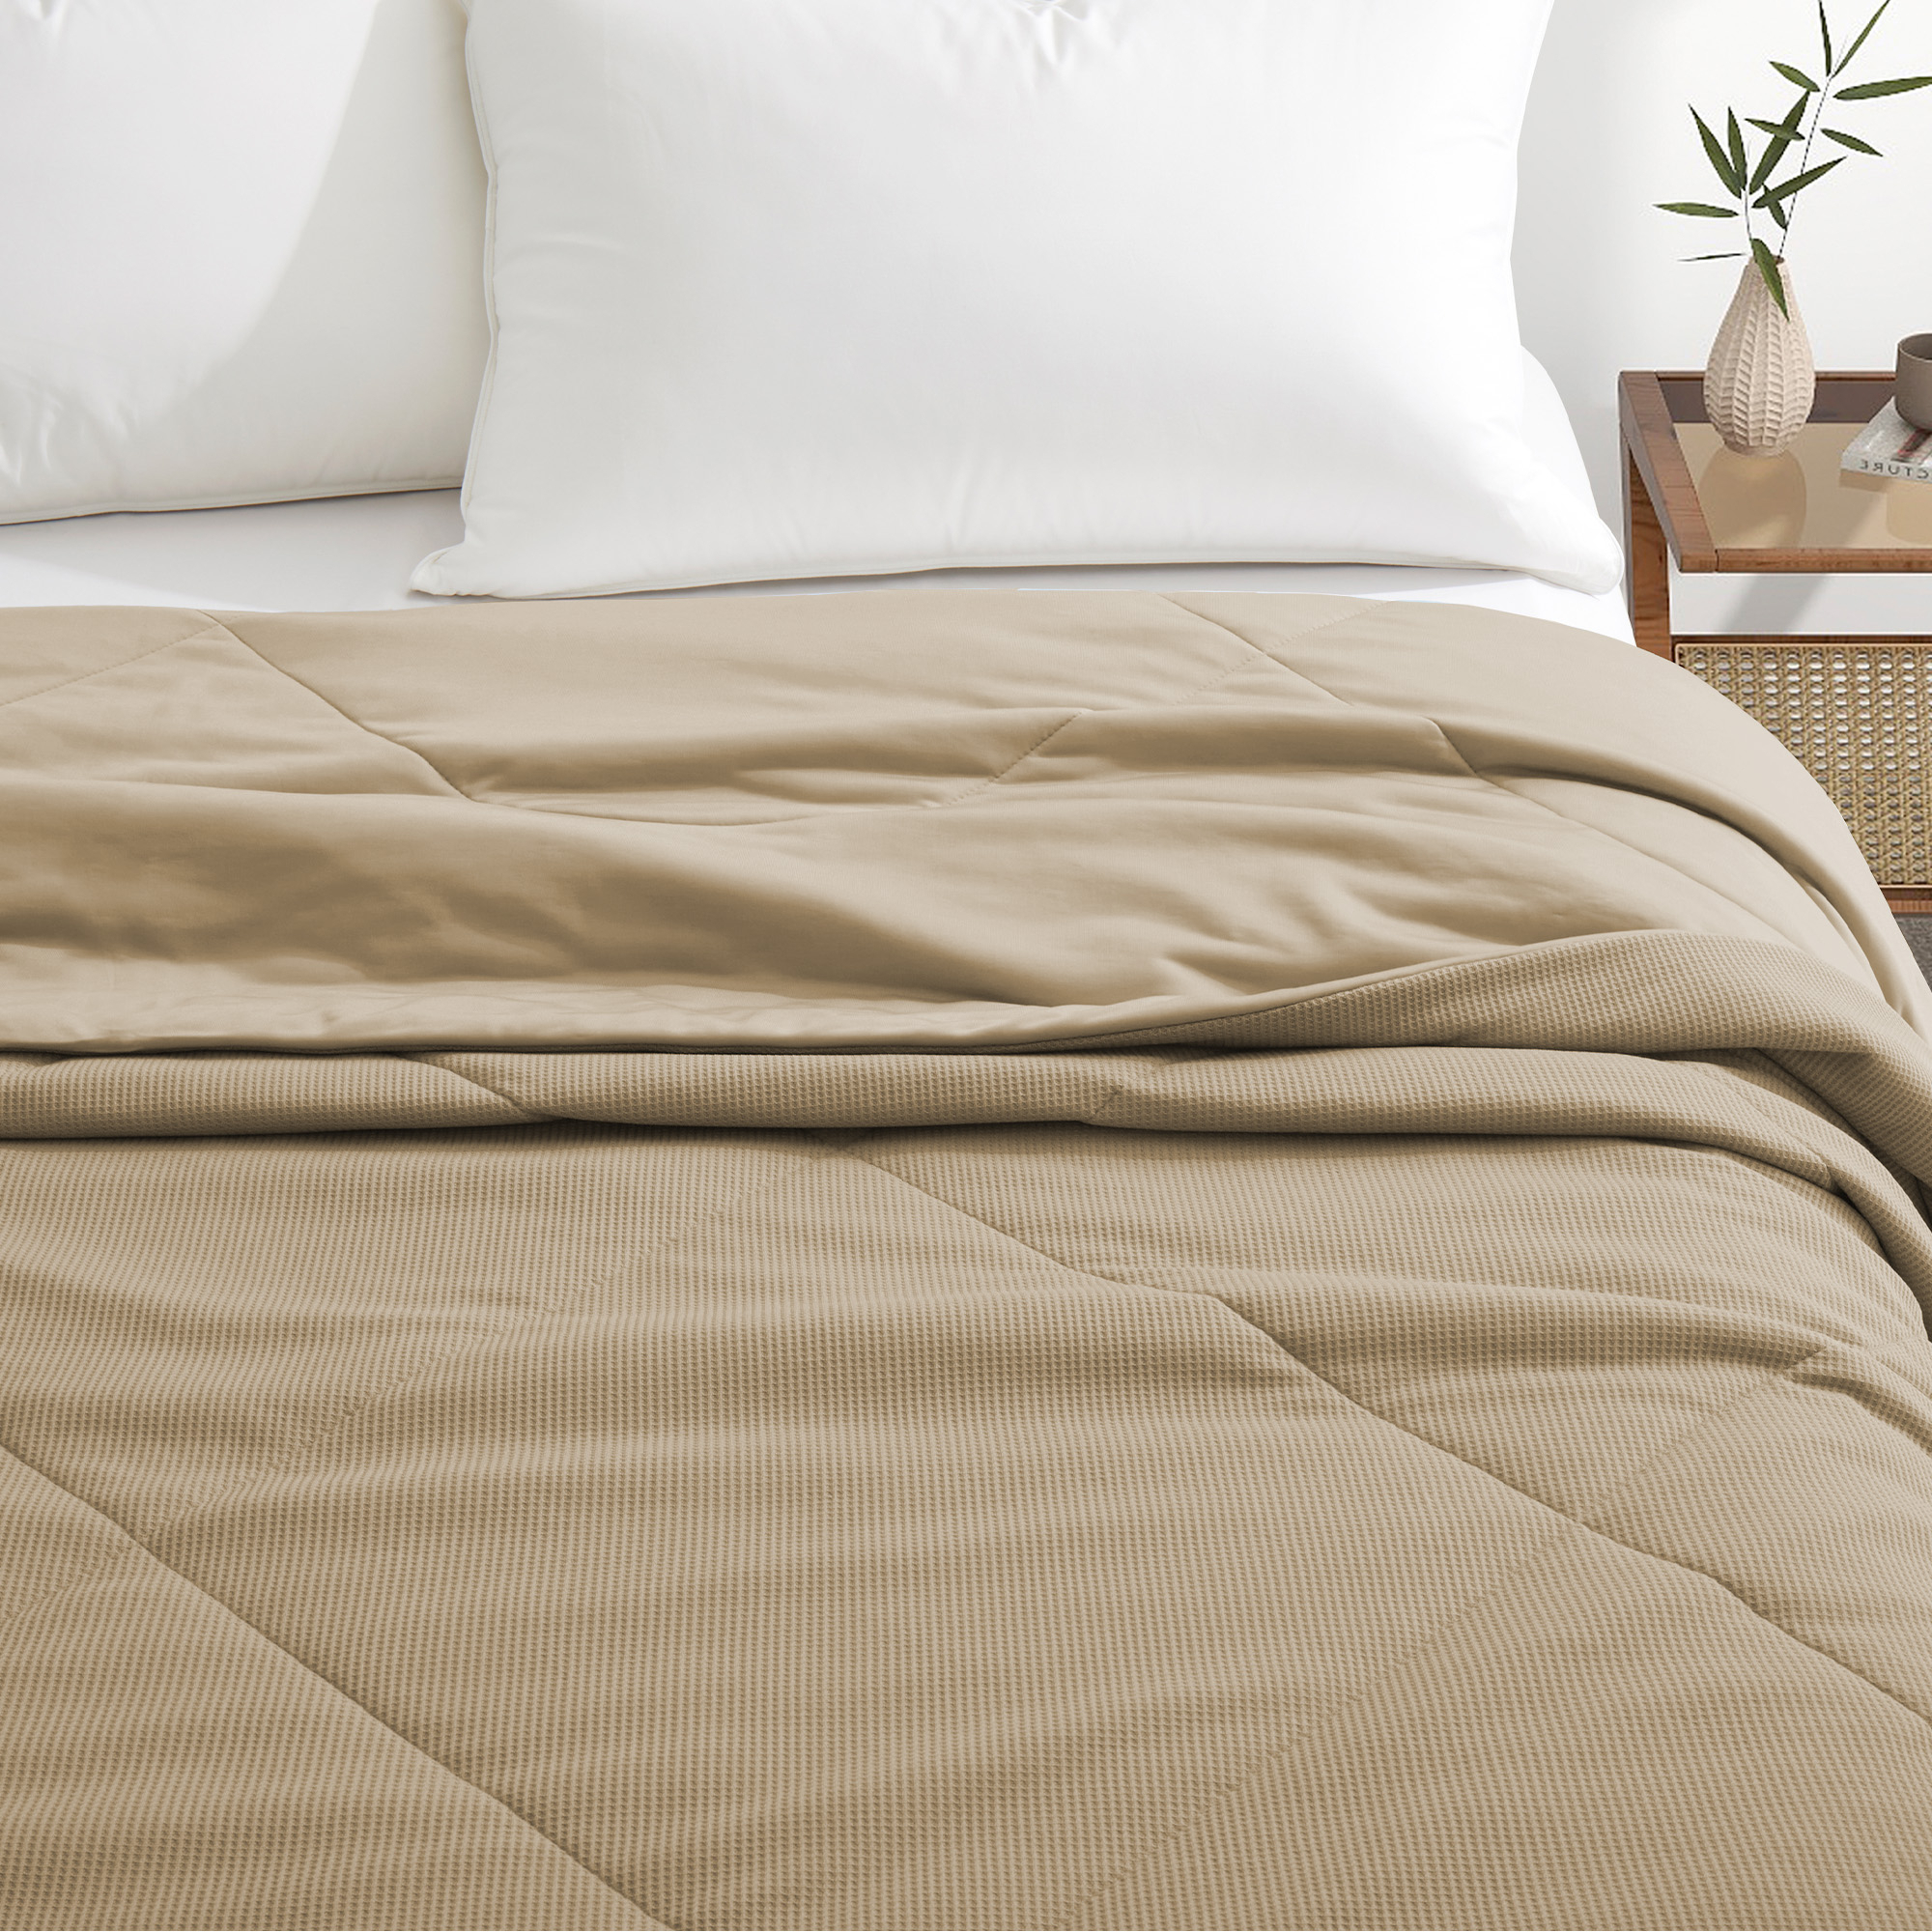 Reversible Oversize Blanket Lightweight Blankets For Sleeping, Khaki, 90 X 90